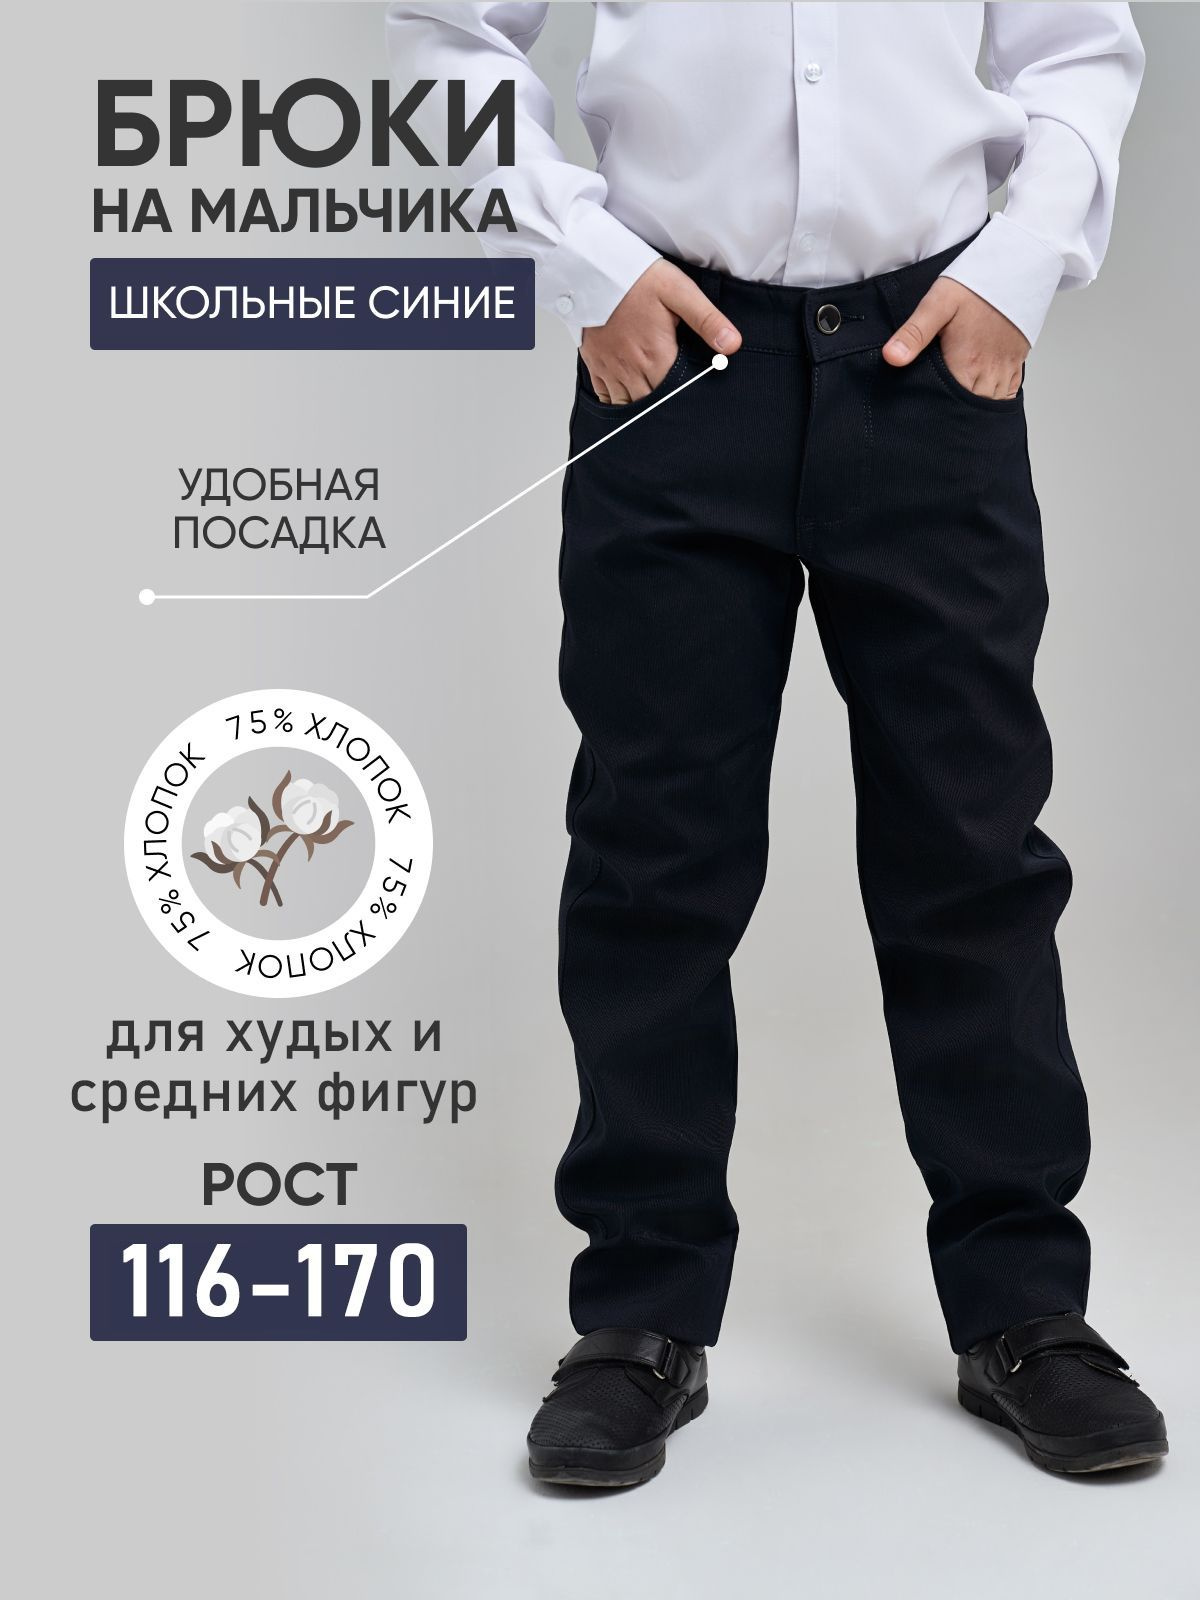 Брюки для мальчика – важный элемент школьной формы, который должен быть не только красивым, но и удобным. Если вы ищете высококачественные, износостойкие и стильные штаны для своего ребенка, то обращайте внимание на школьные брюки от нашего бренда.